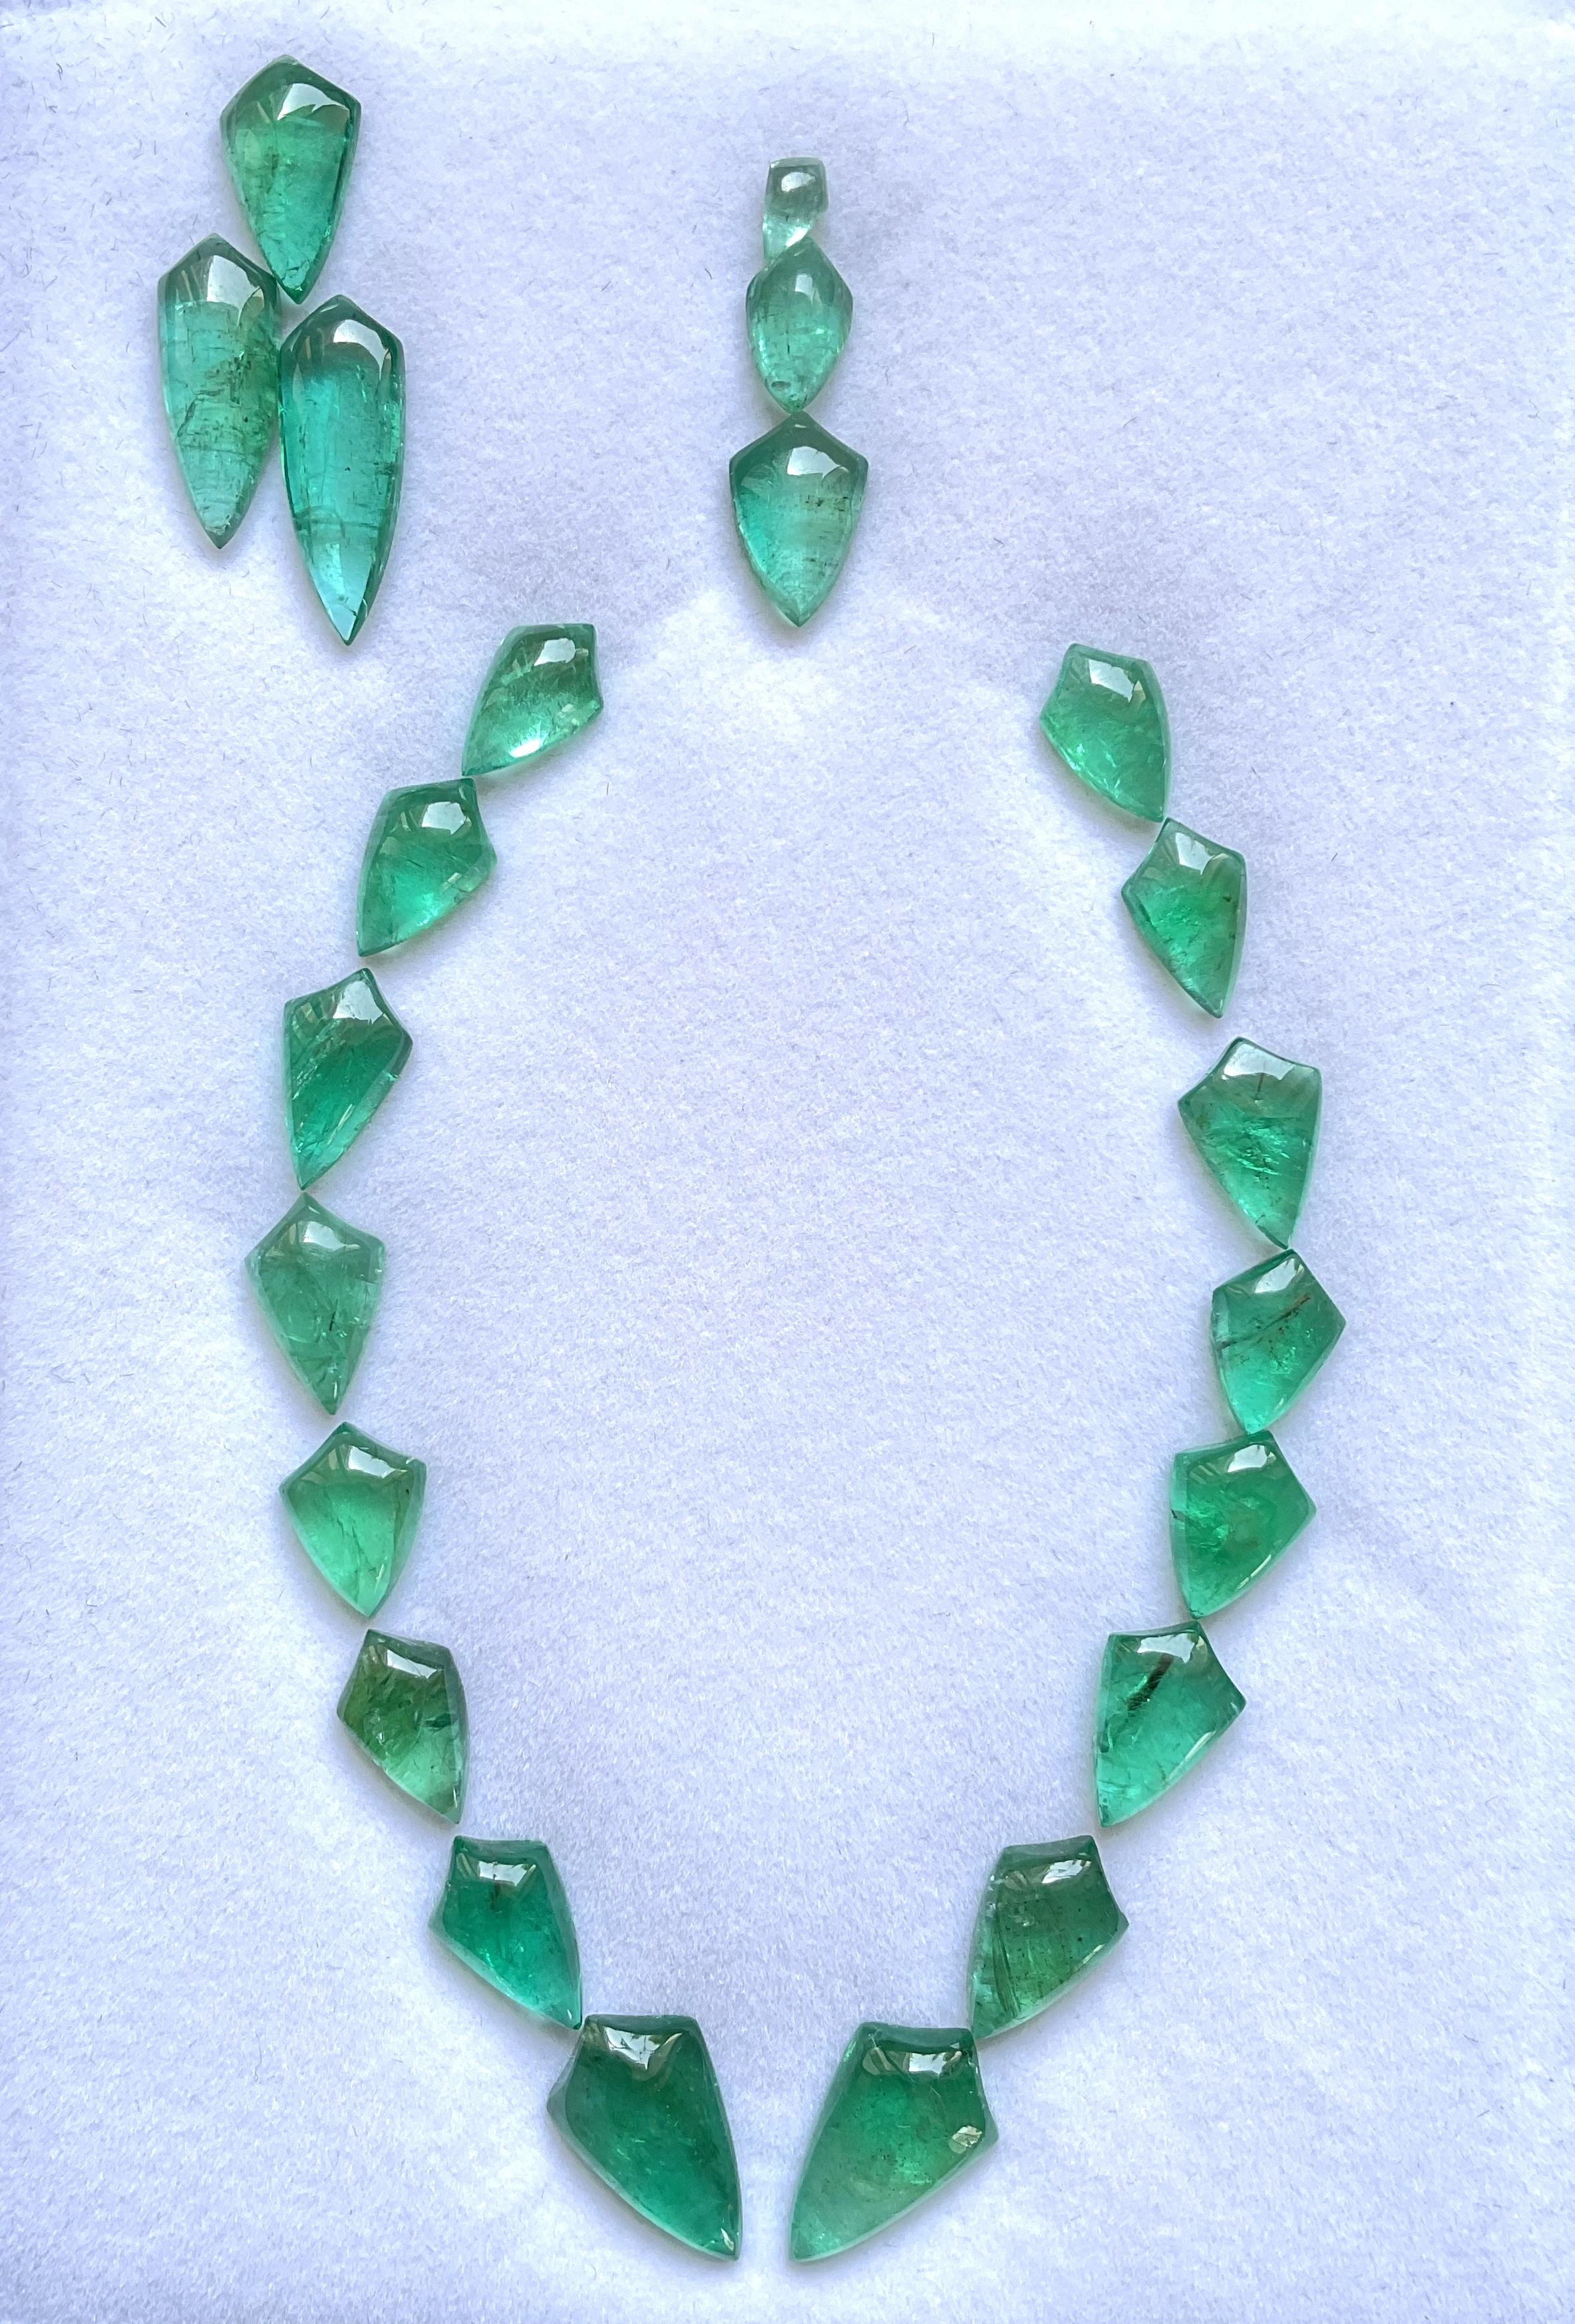 72.50 Karat Zambian Emerald Shield Pair Cabochon Stein für feinen Schmuck Natural Gem
Gewicht: 72,50 Karat
Größe: 7x4 bis 18x11 MM
Stückzahl: 22
Die Form: Schild